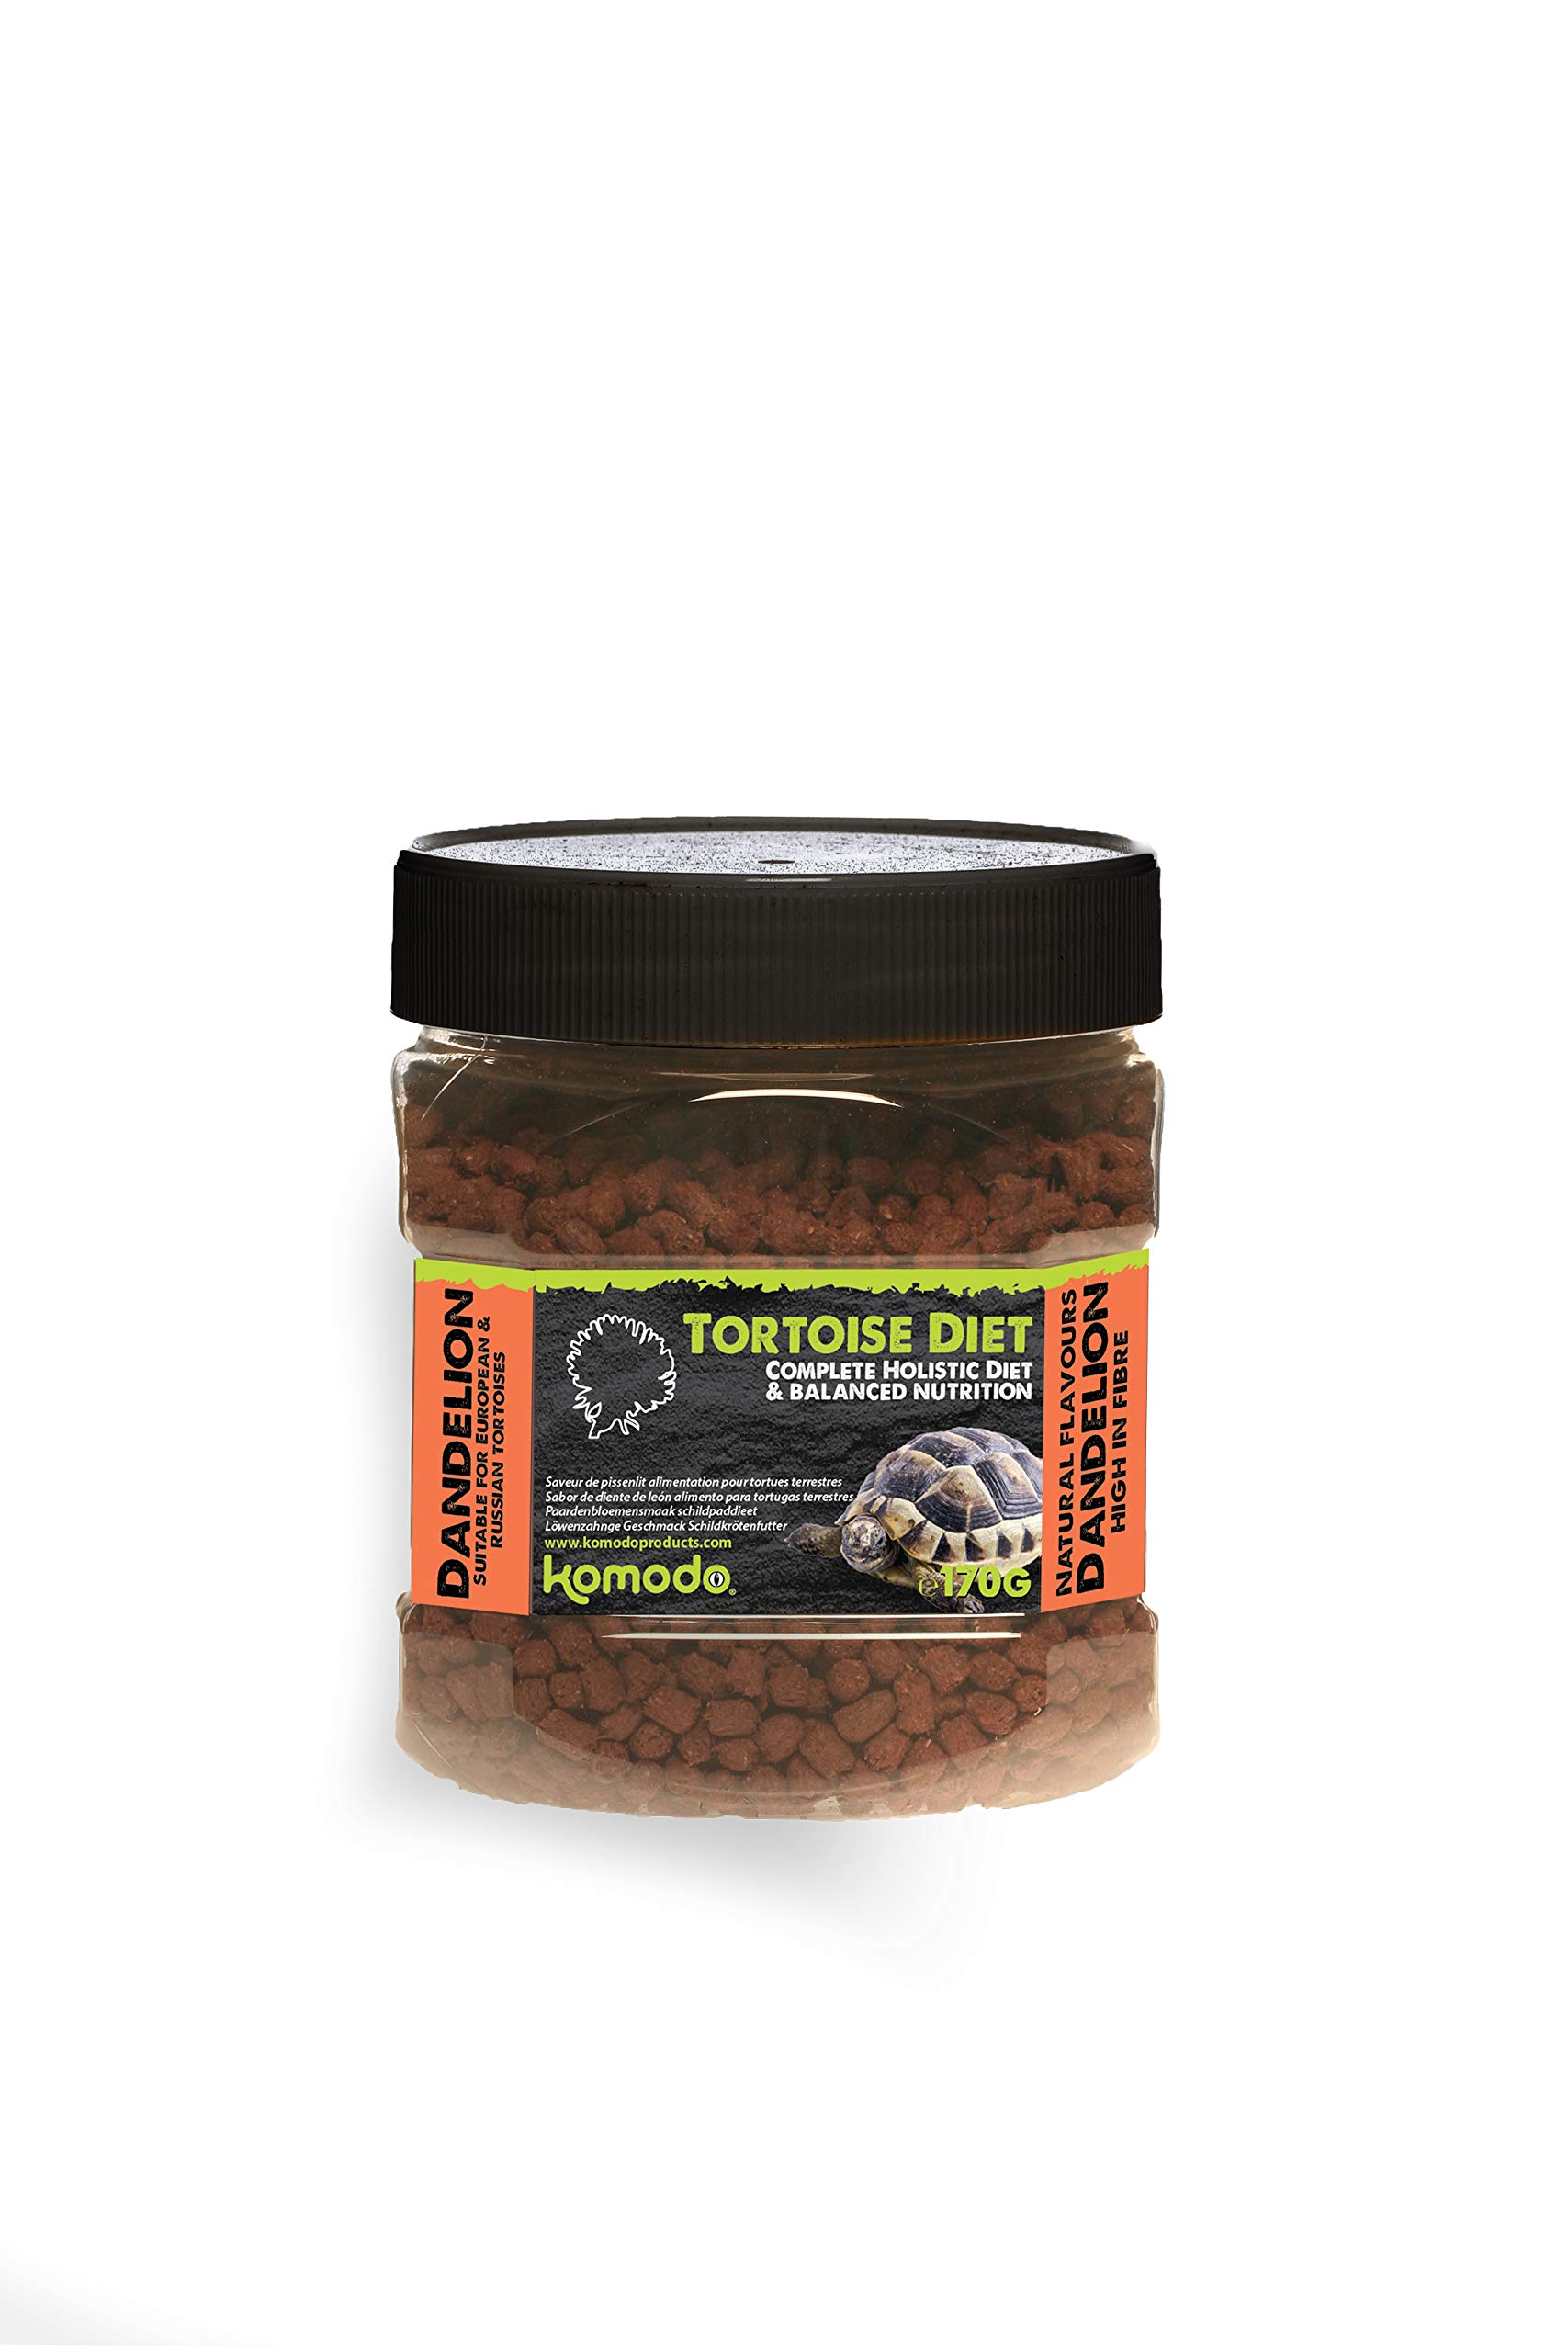 Komodo Complete Holistic Tortoise Diet, Dandelion, Tube,170 g